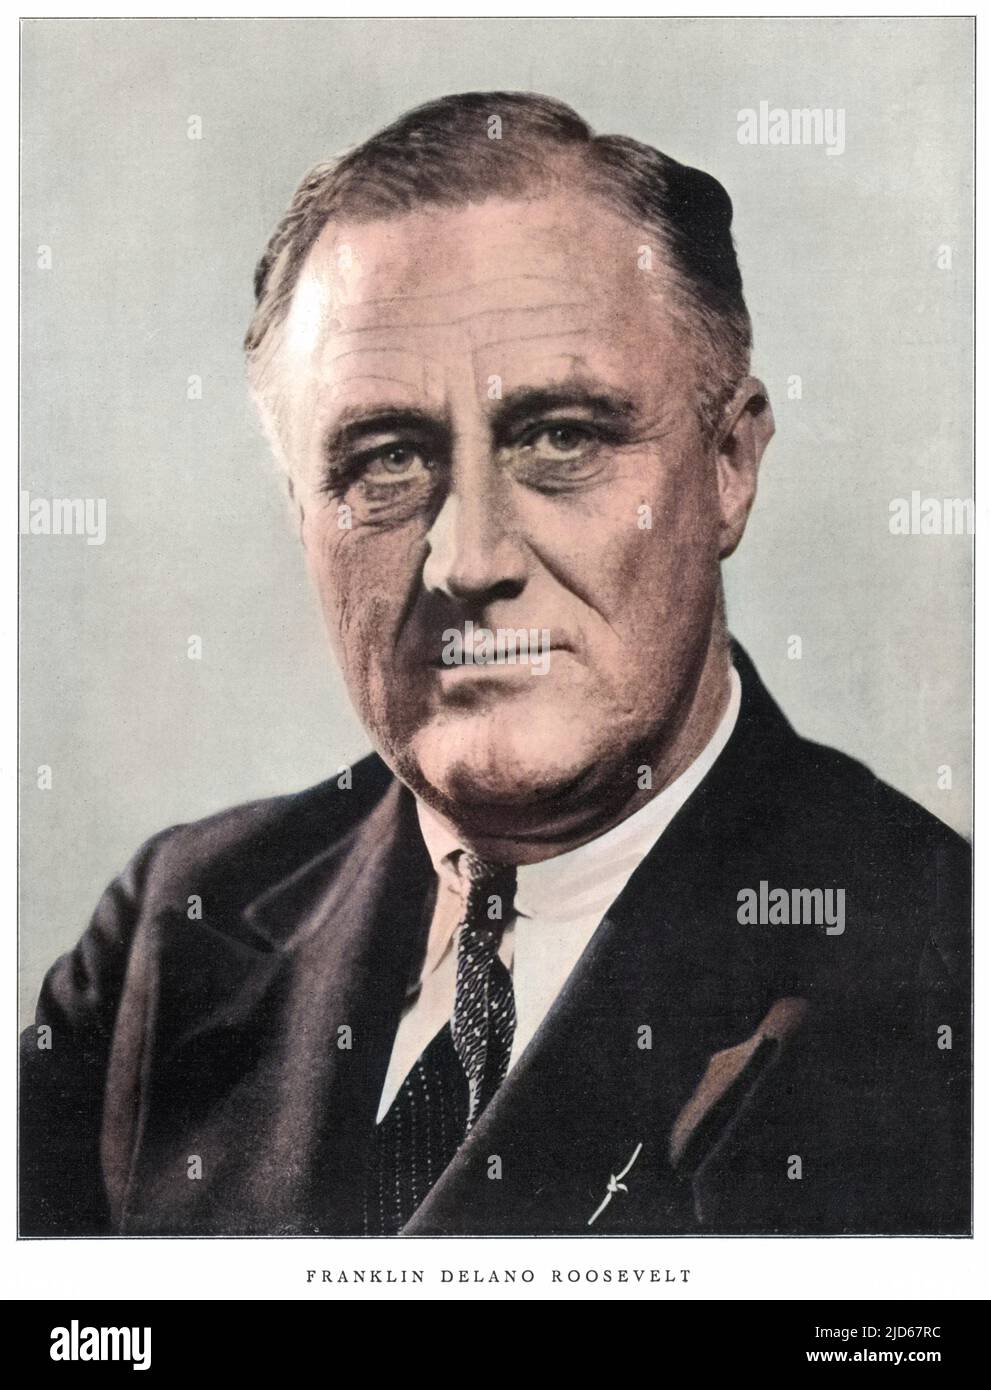 FRANKLIN DELANO ROOSEVELT 32. Präsident der USA im Jahr seiner Wahl Colorized Version of : 10031078 Datum: 1882 - 1945 Stockfoto